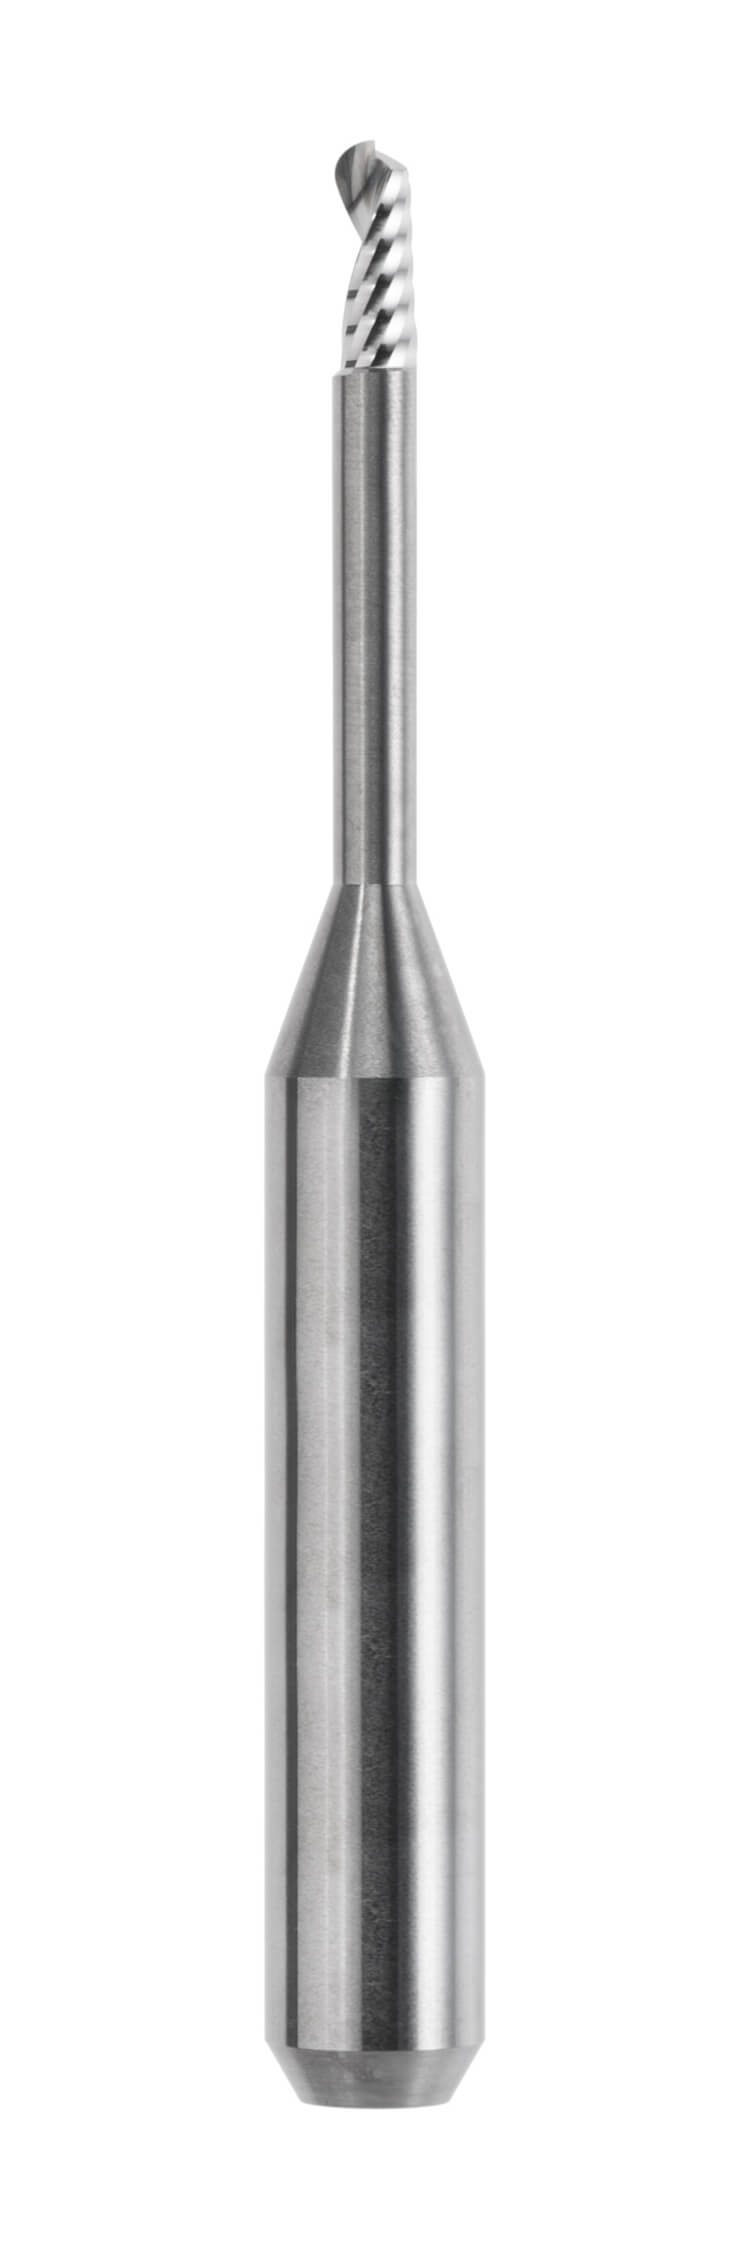 Offene Maschinensysteme 6,0 mm Schaft, Länge 53,0 mm